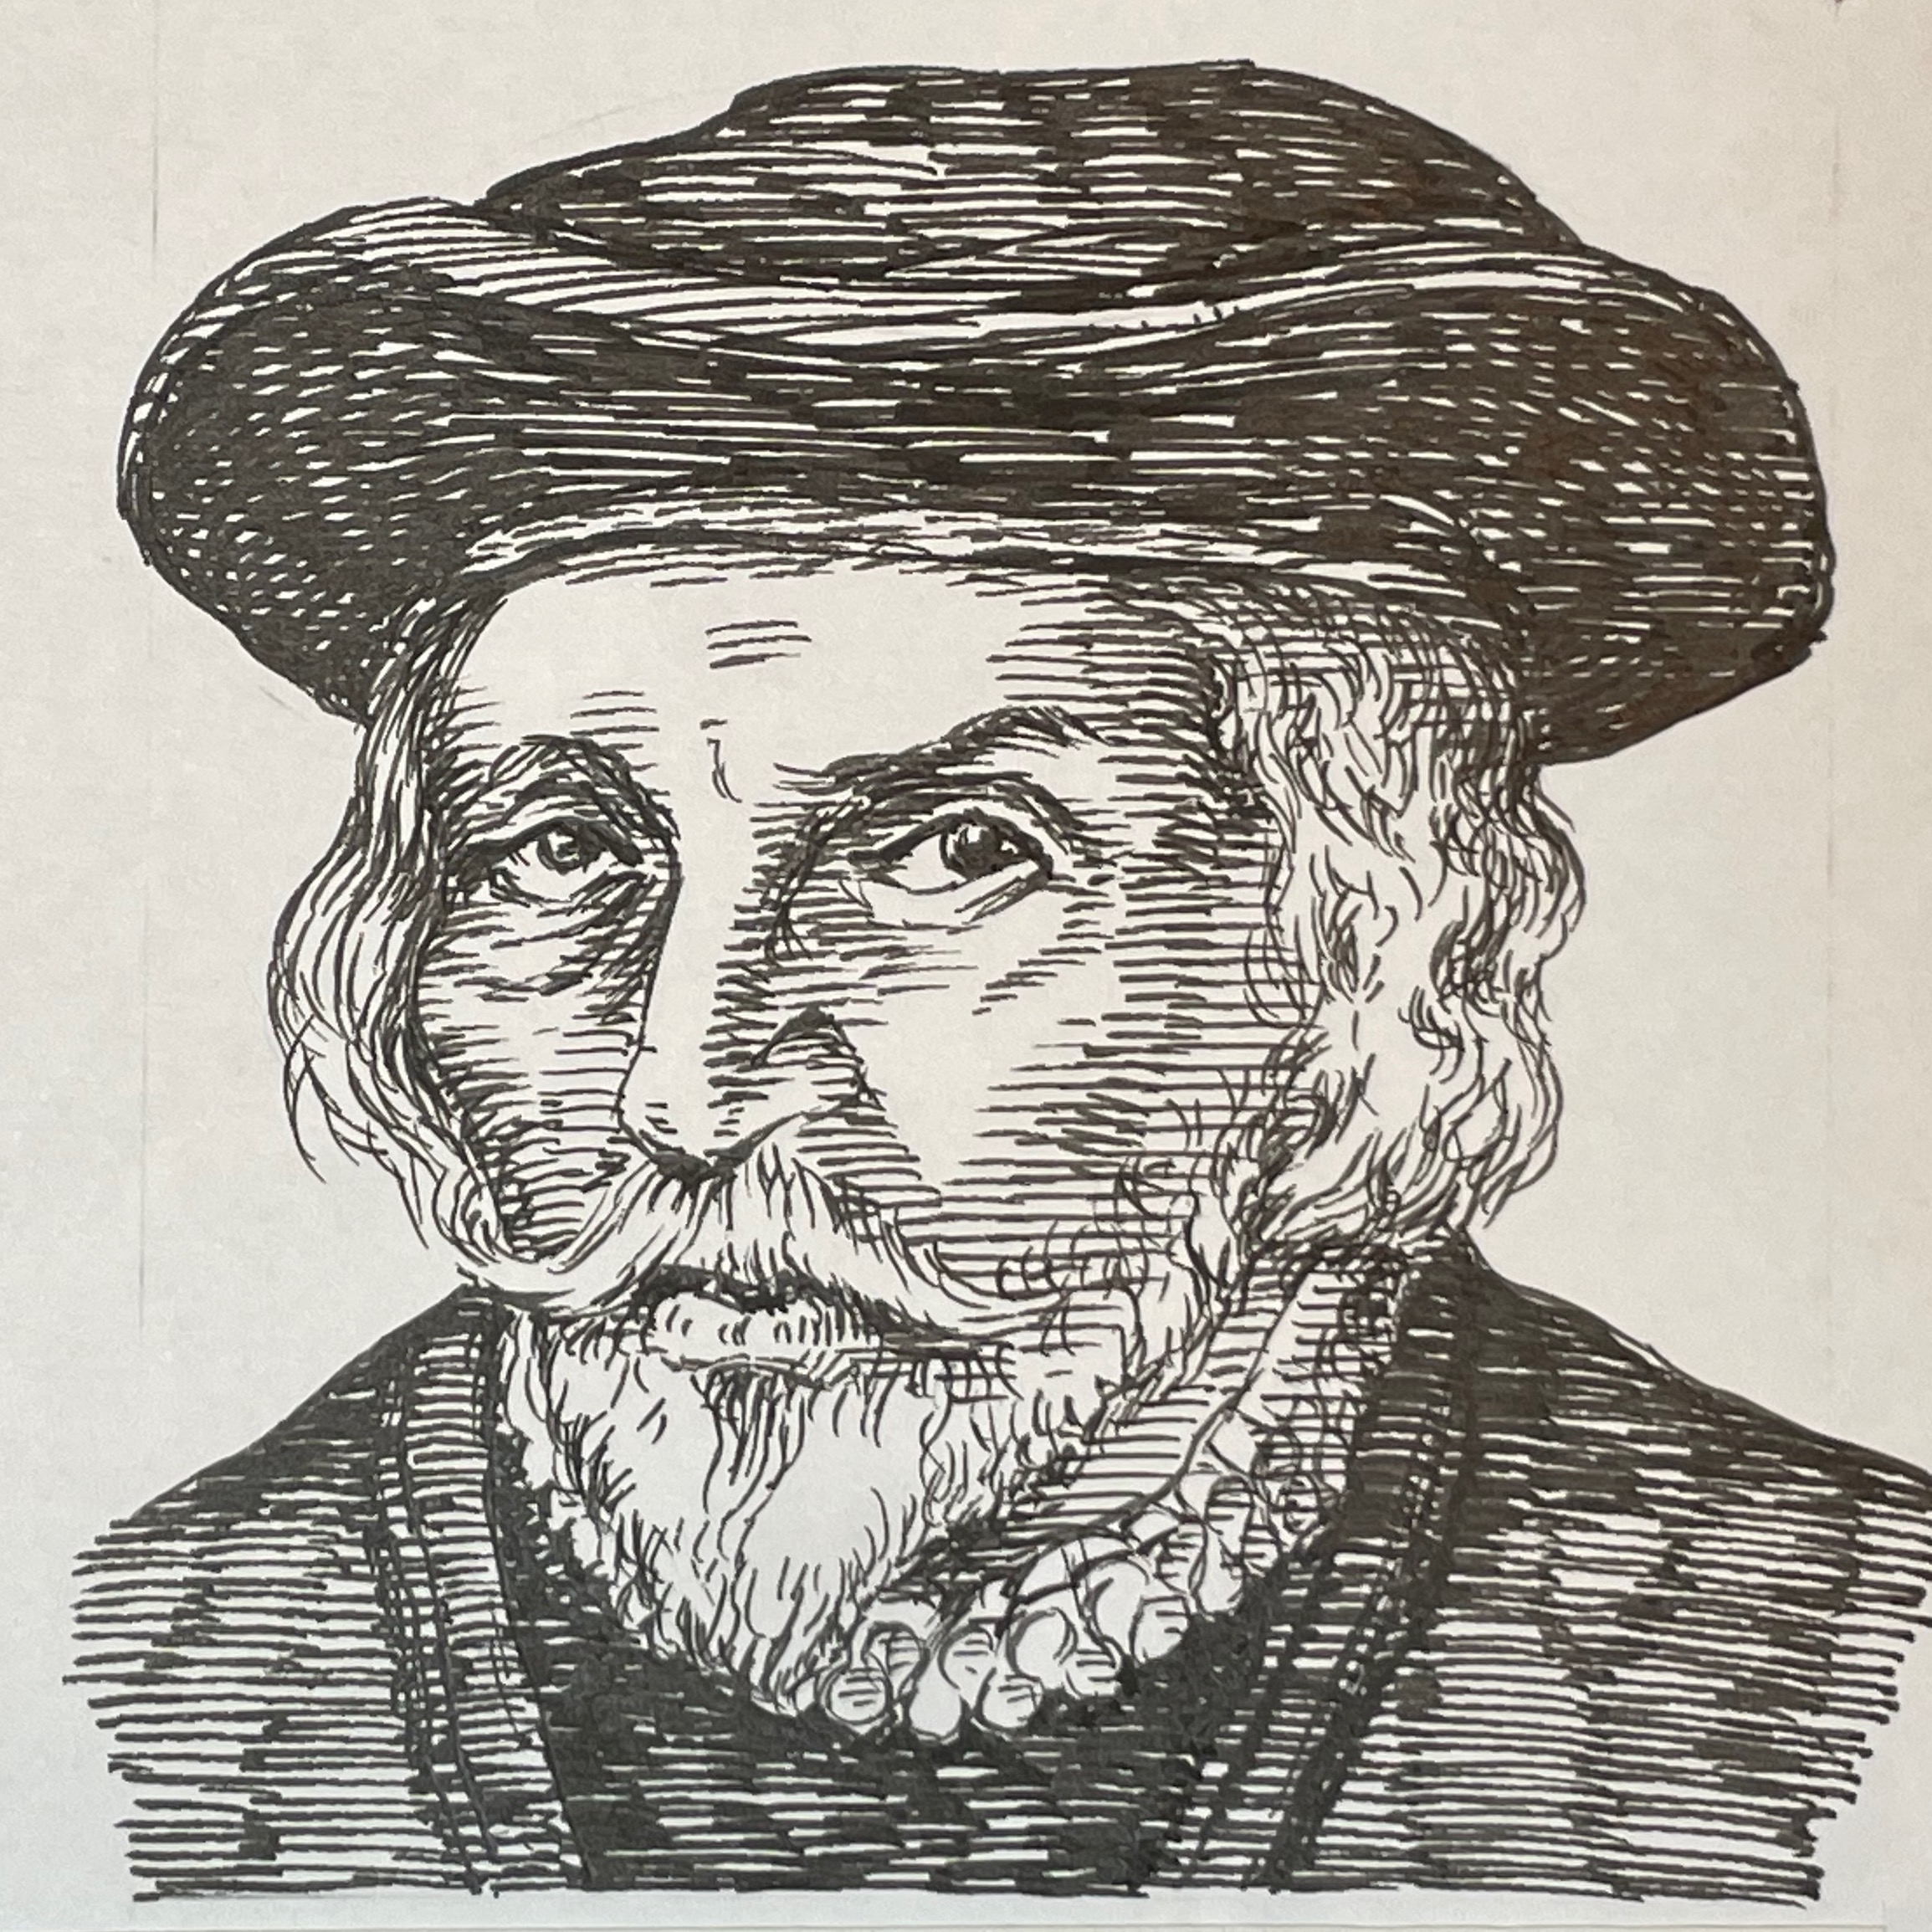 1578-1657を生きた医学者。パドヴァ大学留学の時、ファブリツィオ(1537-1619)に師事し研究を受け継ぐ。その結果1628年血液循環説を提唱し心臓から拍出された血液は全身をめぐり心臓に帰ってくることを突き止めた。これによりガレノスの生理学説は消失する。またファブリツィオ研究の発展として1651年On Animal Generationにて鶏の胚発生過程を明らかにした。